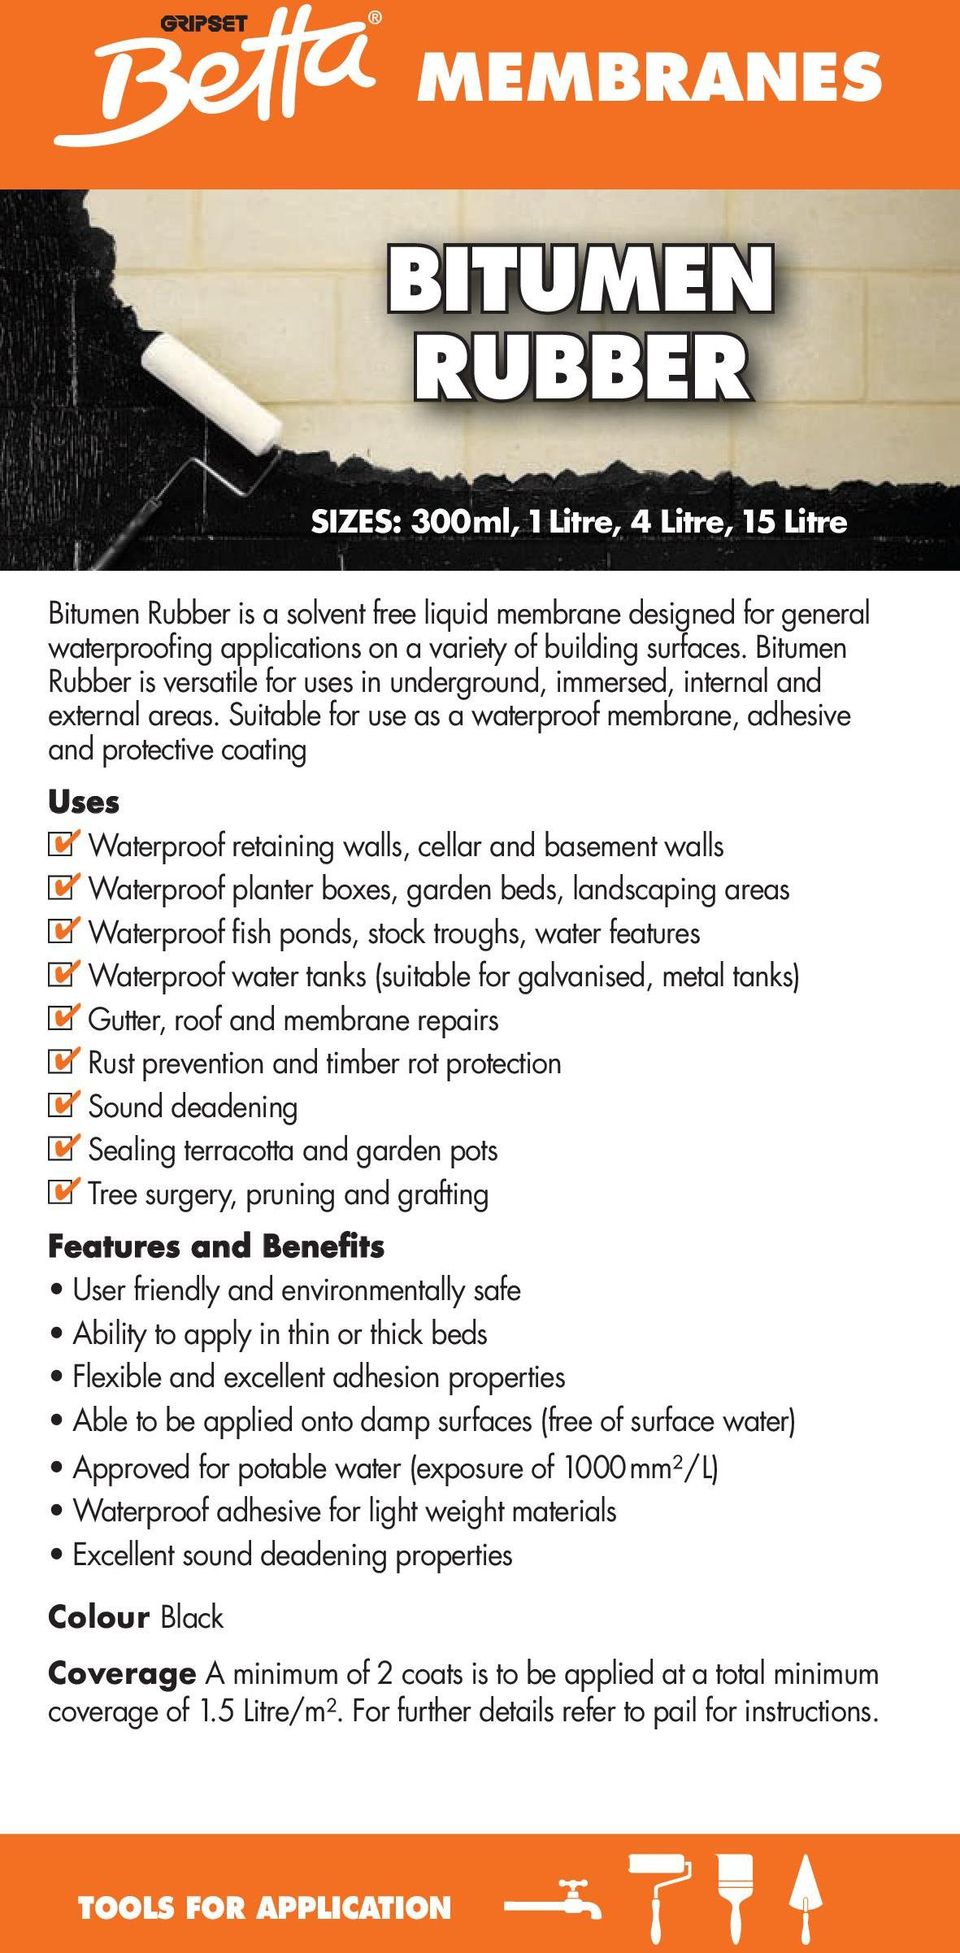 Aust Brand 1 x Gripset Betta WATERPROOFING PEEL & SEAL TAPE 5m Self Adhesive